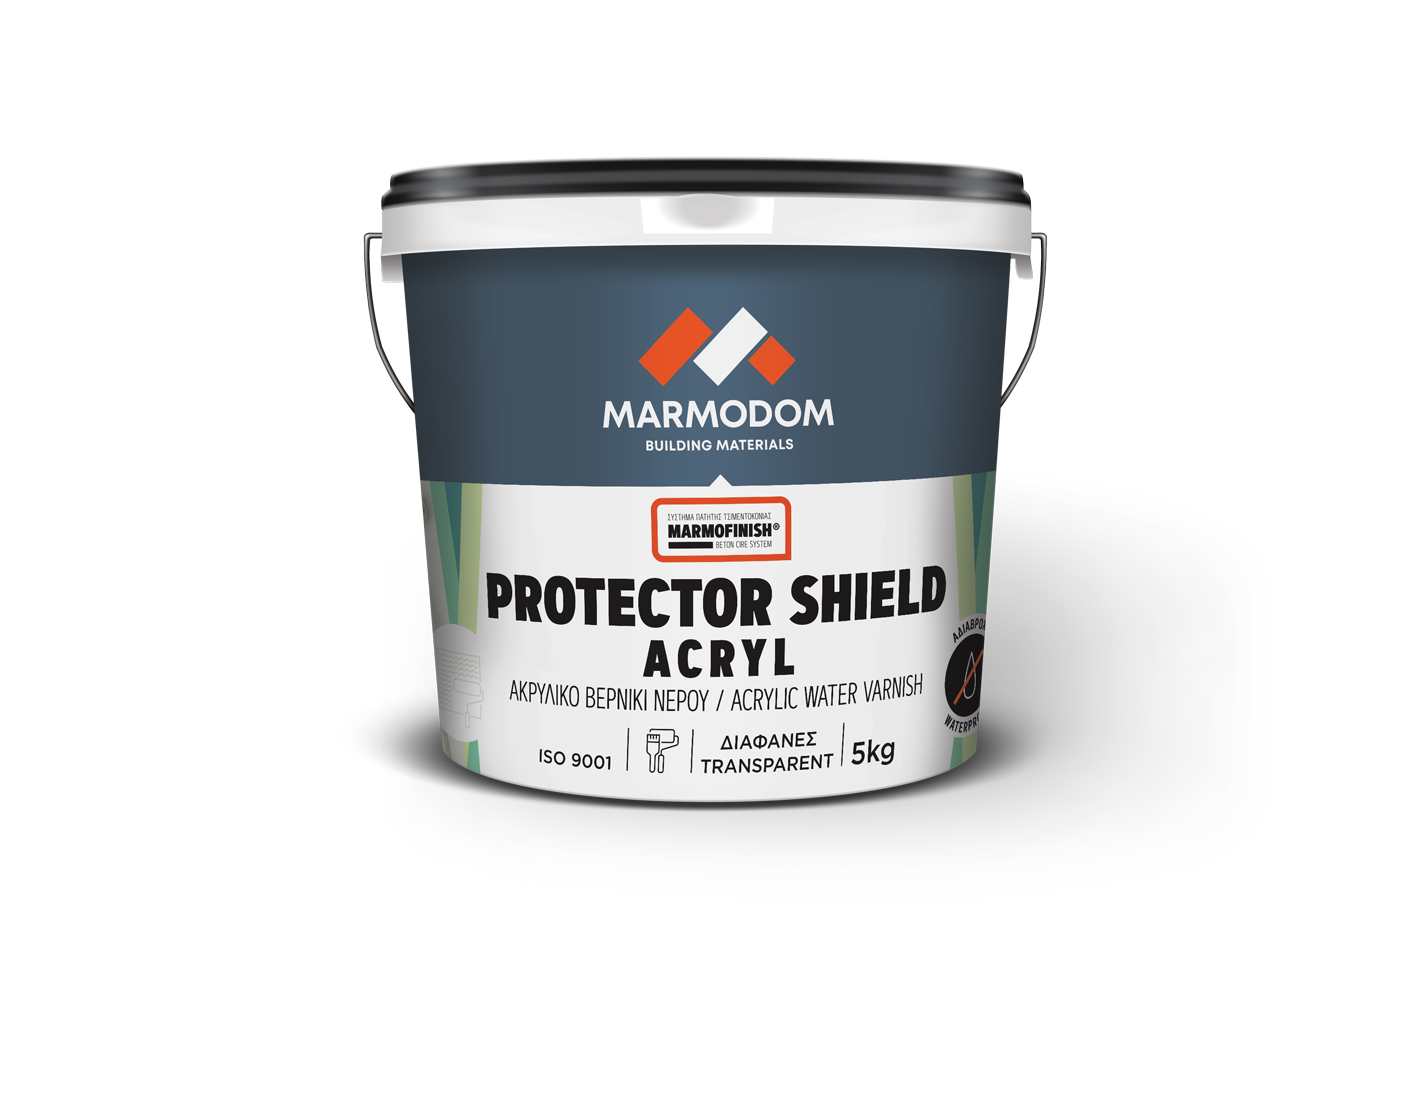 Marmodom PROTECTOR SHIELD ACRYL 1kg Προστατευτικό ακρυλικό βερνίκι νερού